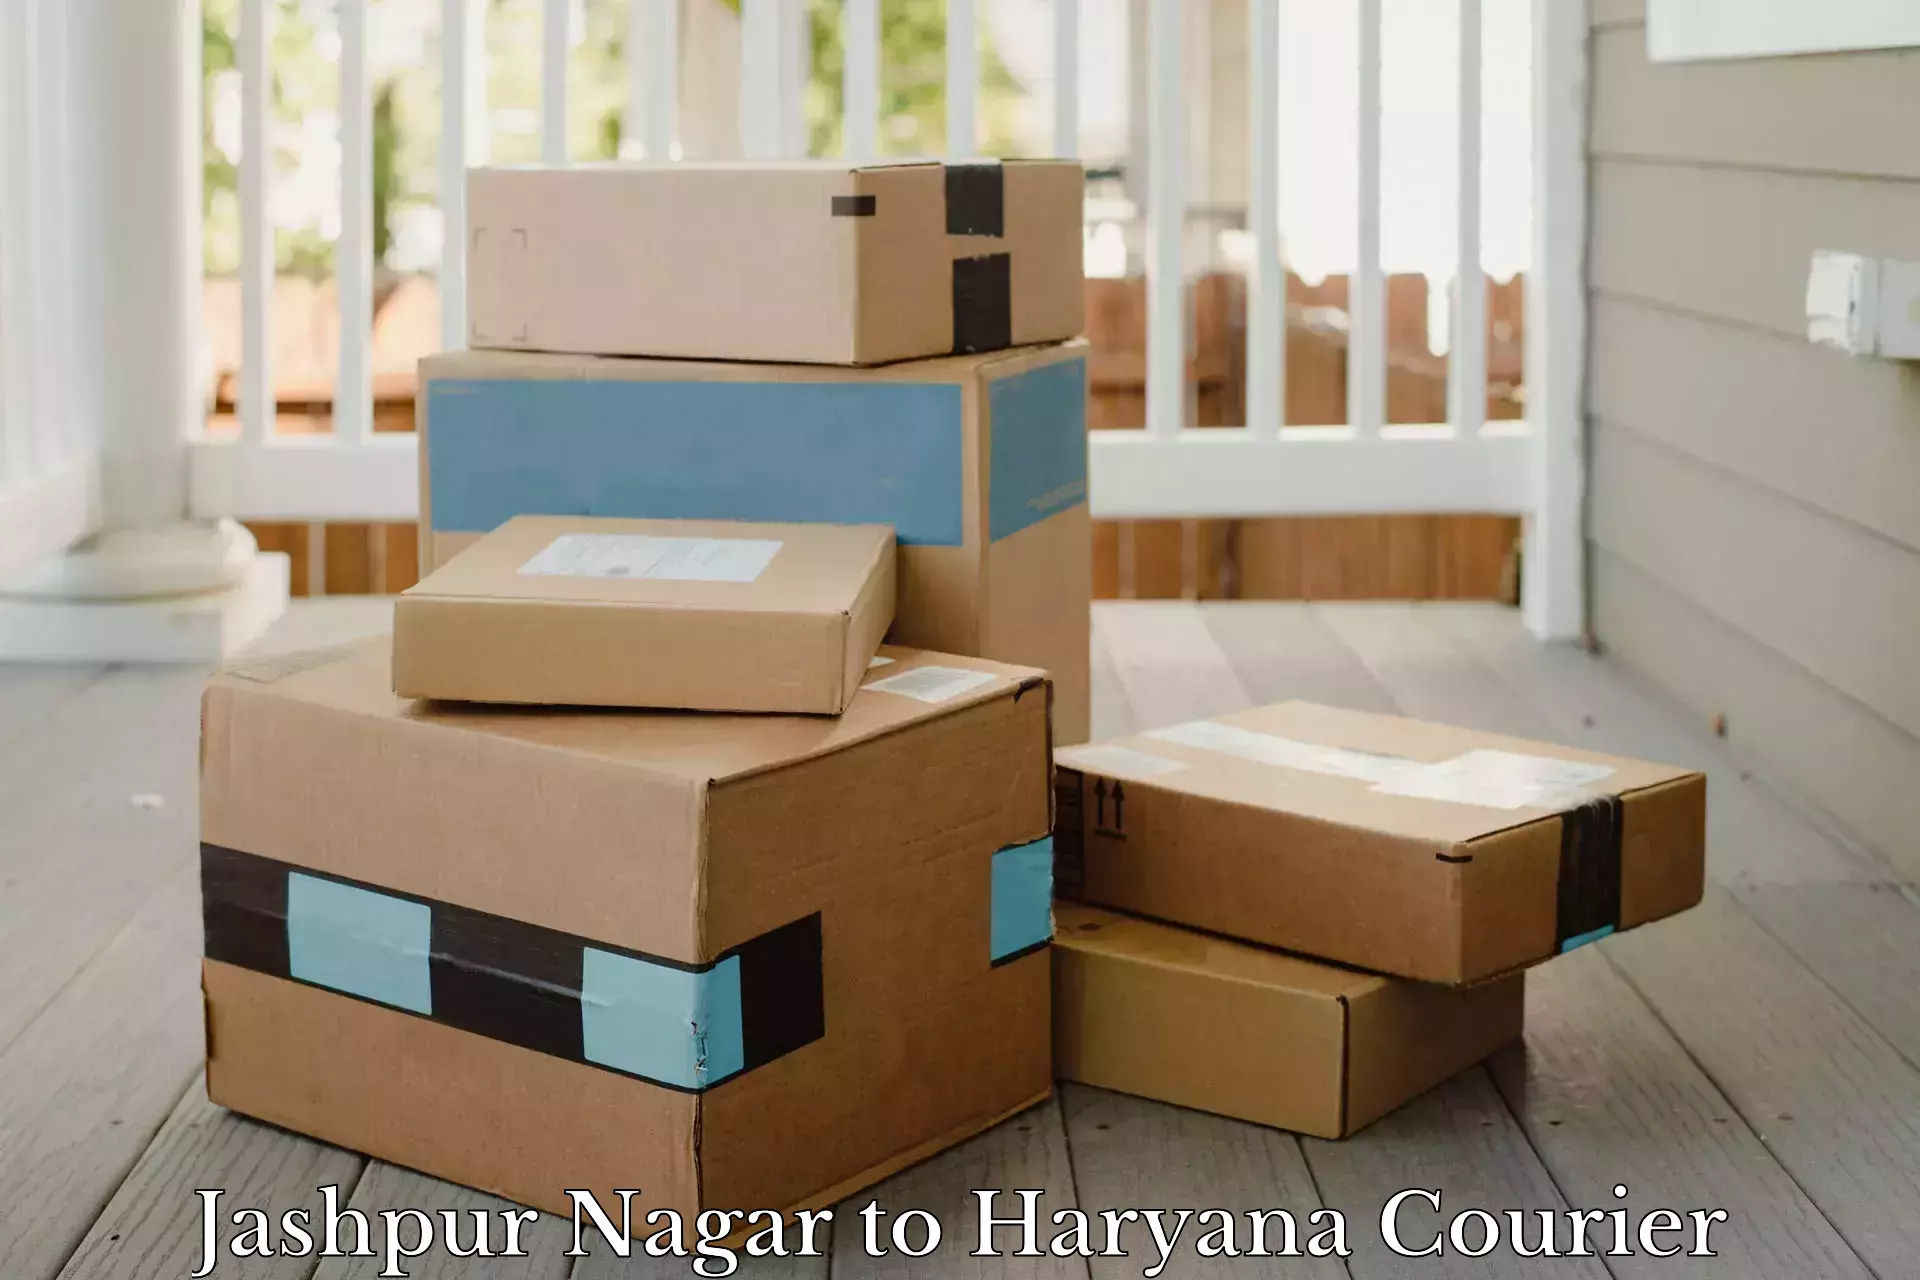 Advanced parcel tracking Jashpur Nagar to Haryana